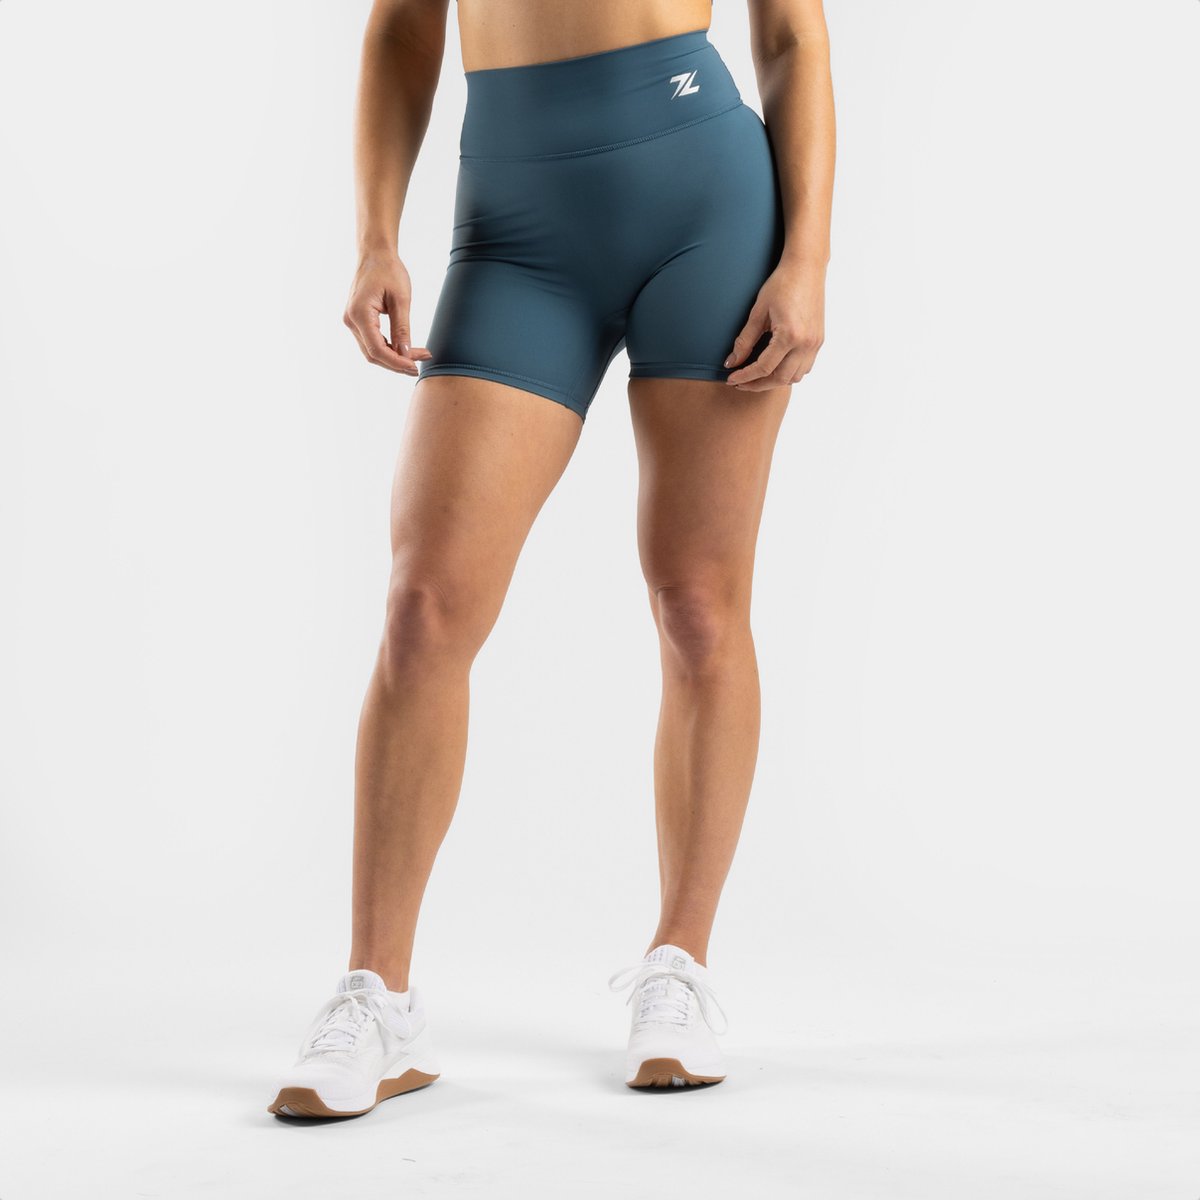 ZEUZ Korte Sport Legging Dames High Waist - Sportkleding & Sportlegging Squat Proof - Fitness & Crossfit - Hardloopbroek, Yoga Broek - 70% Nylon & 30% Elastaan - Blauw - Maat XL